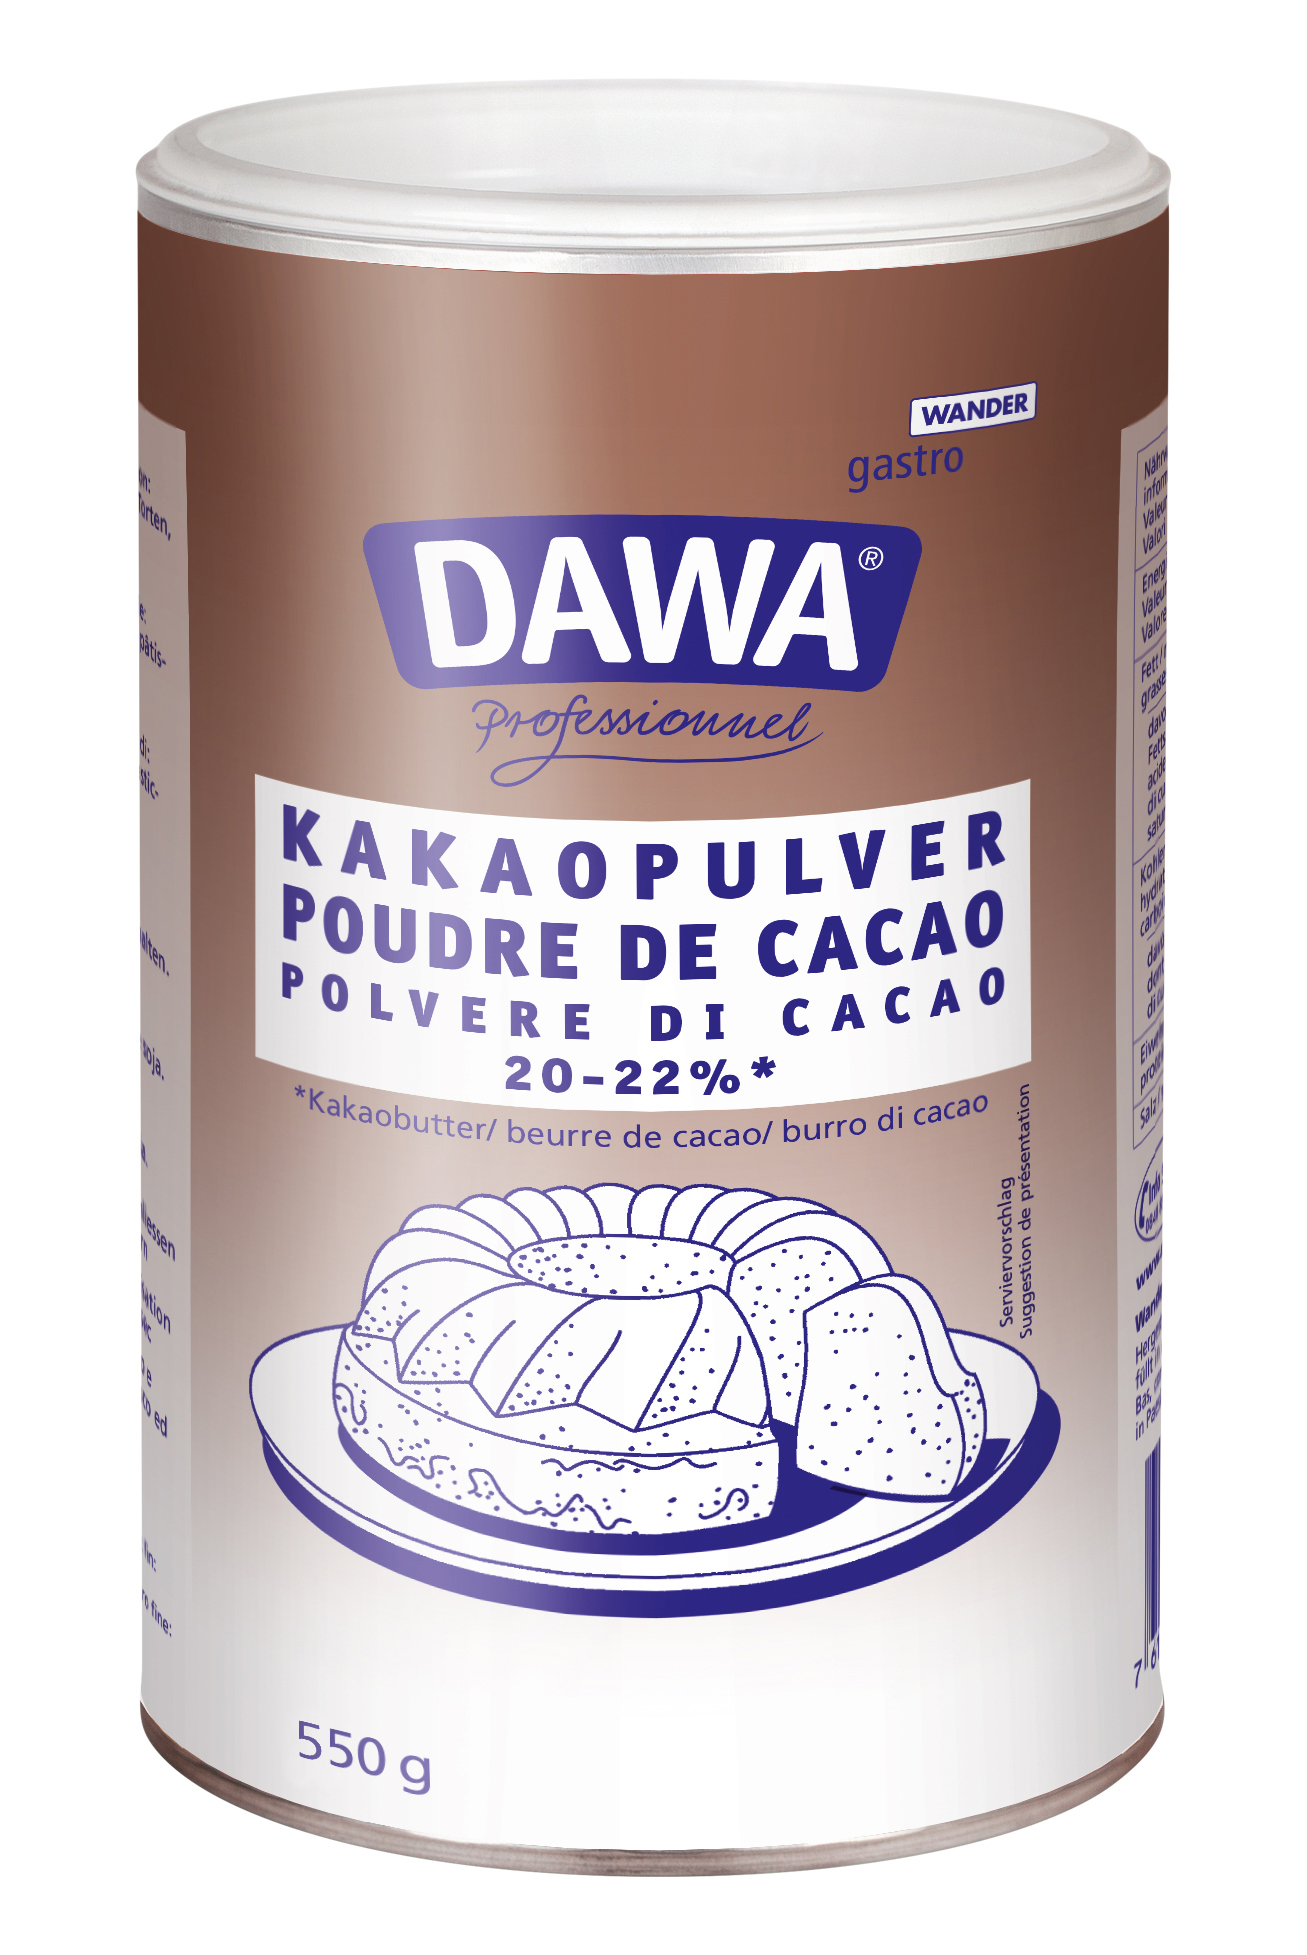  Dawa Kakaopulver